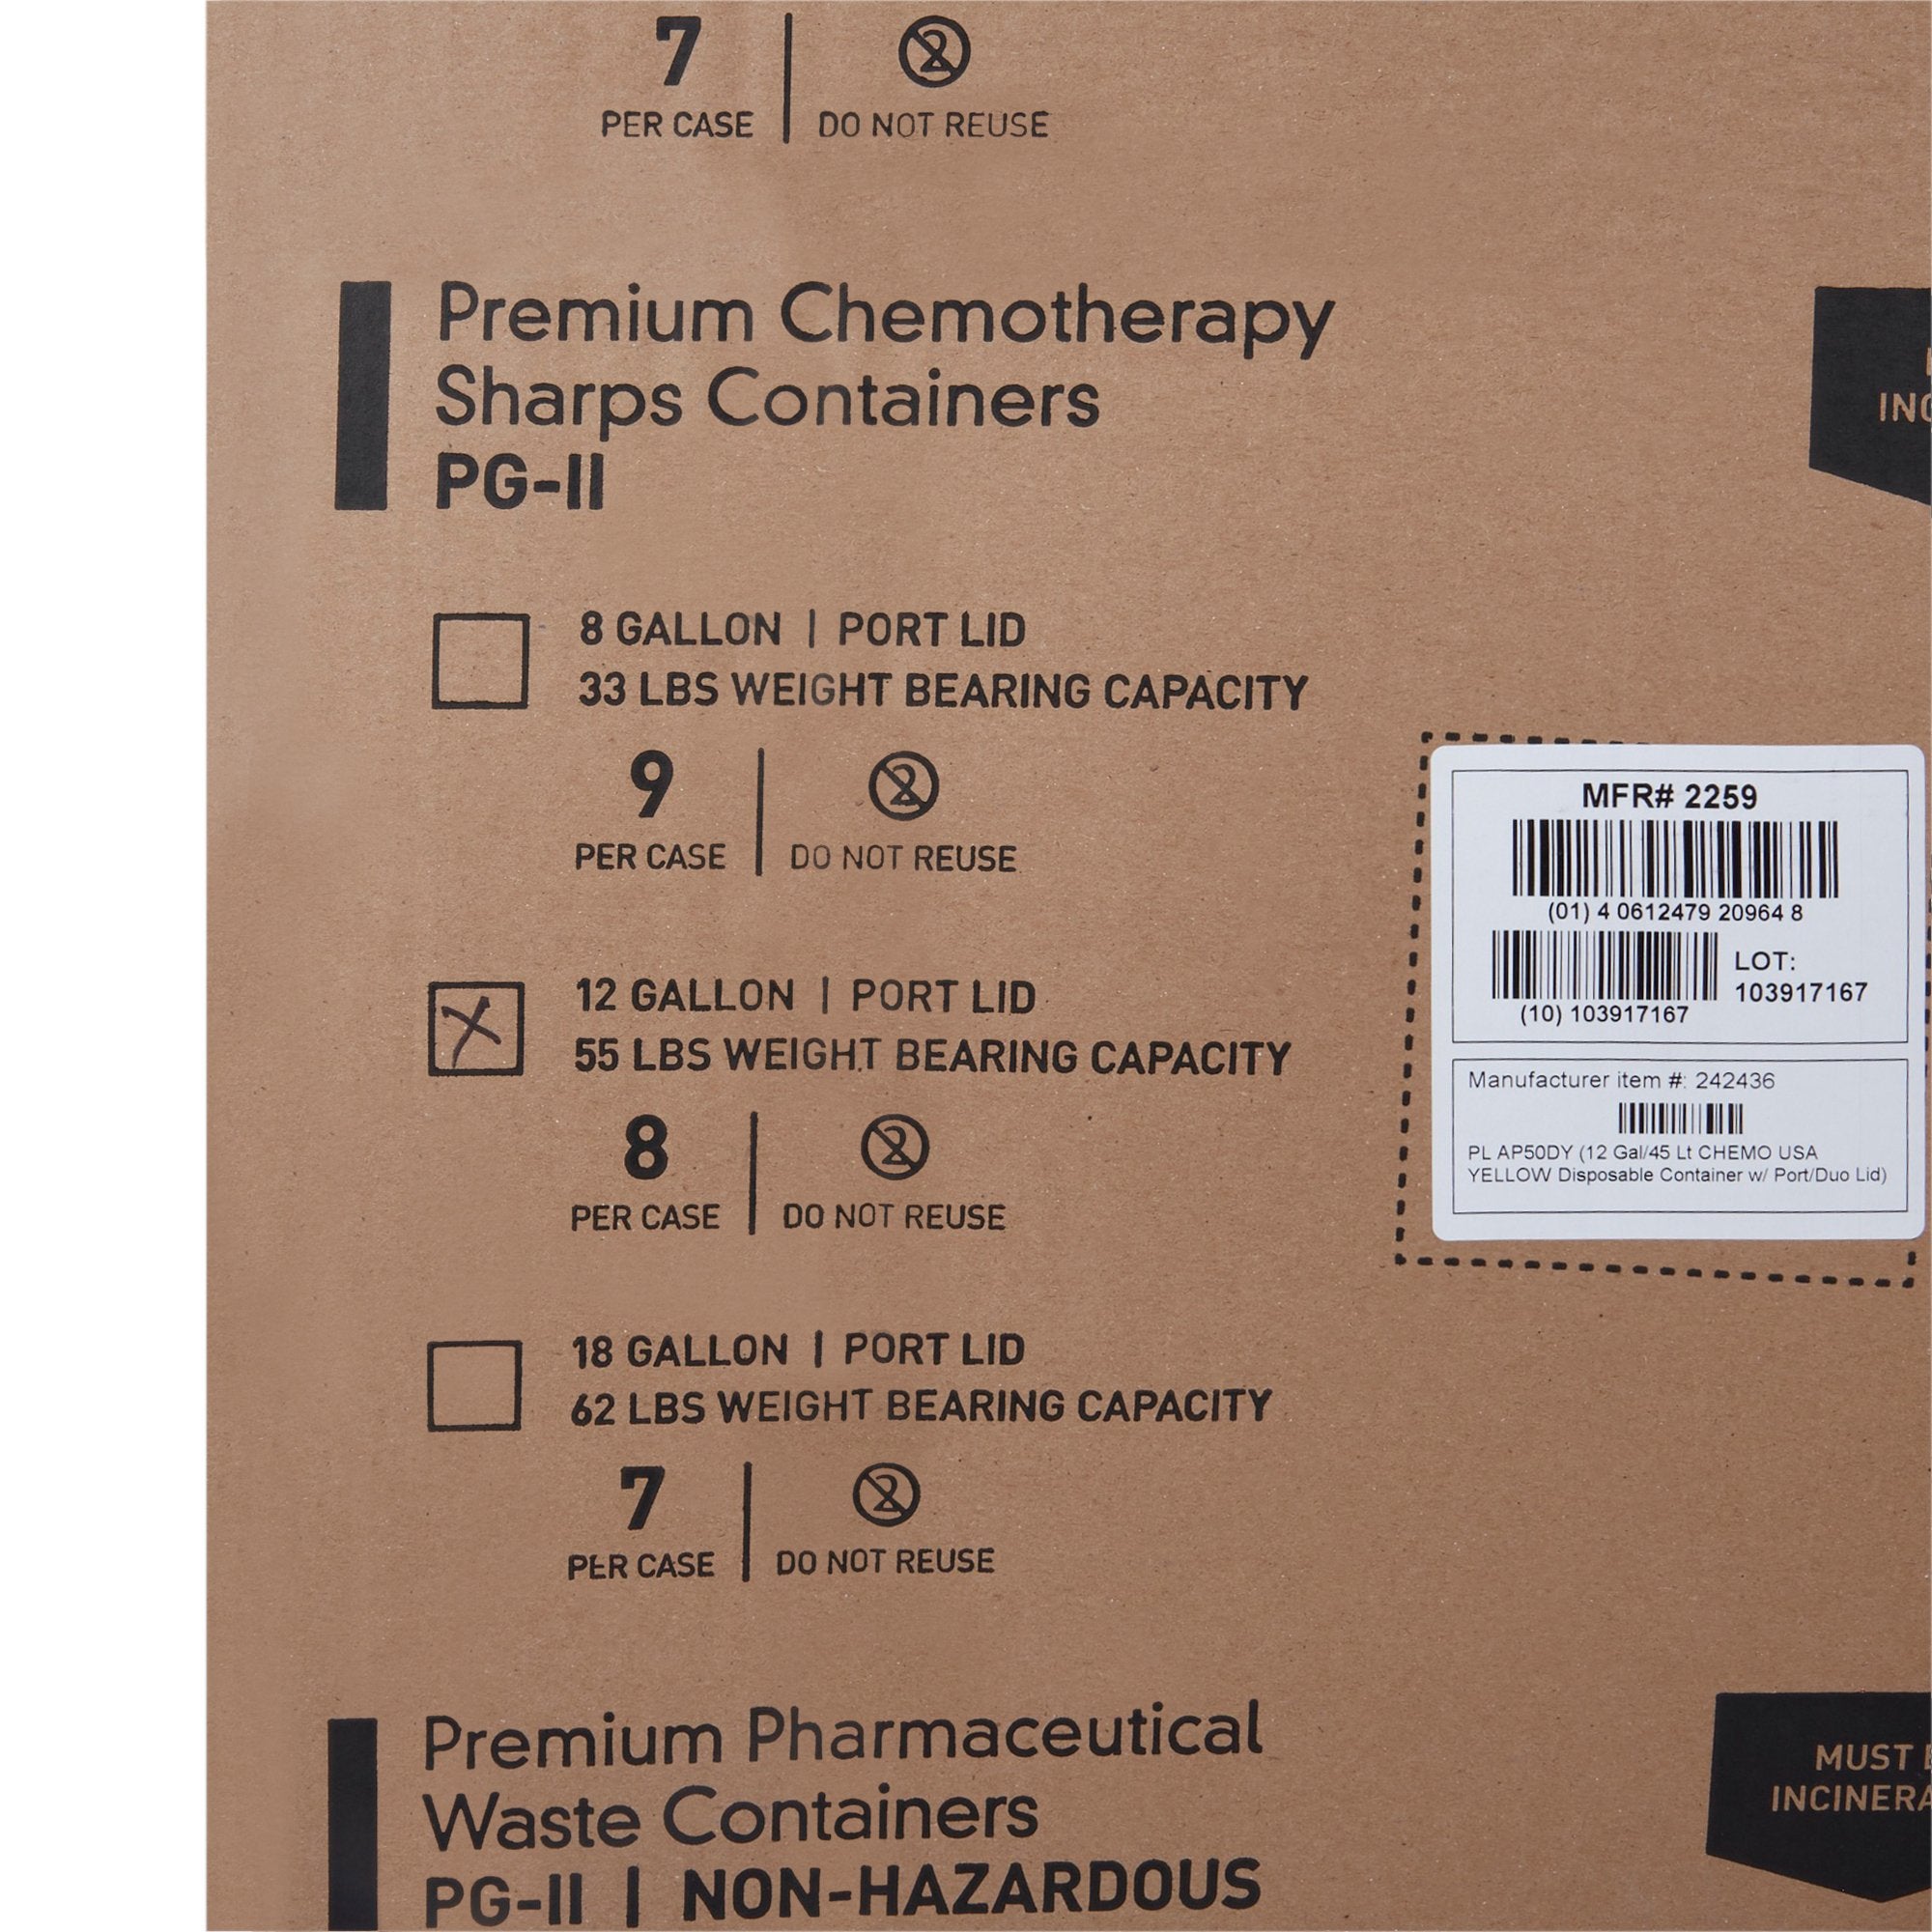 McKesson Prevent® Chemotherapy Sharps Container, 12 Gallon, 20-4/5 x 17-3/10 x 13 Inch (1 Unit)